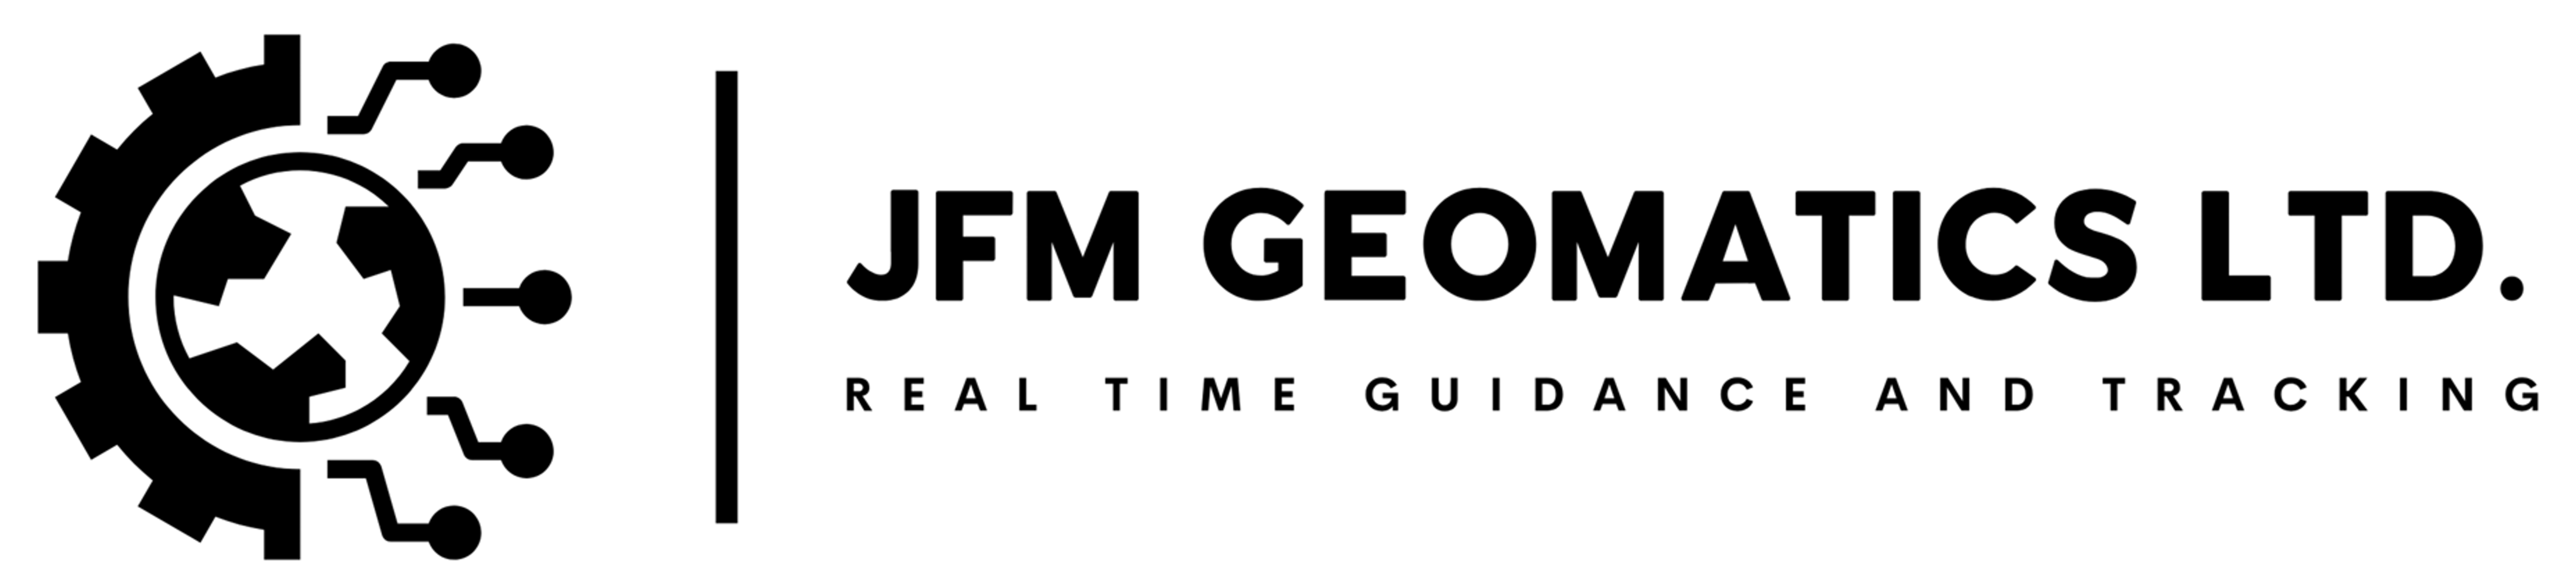 JFM Geomatics